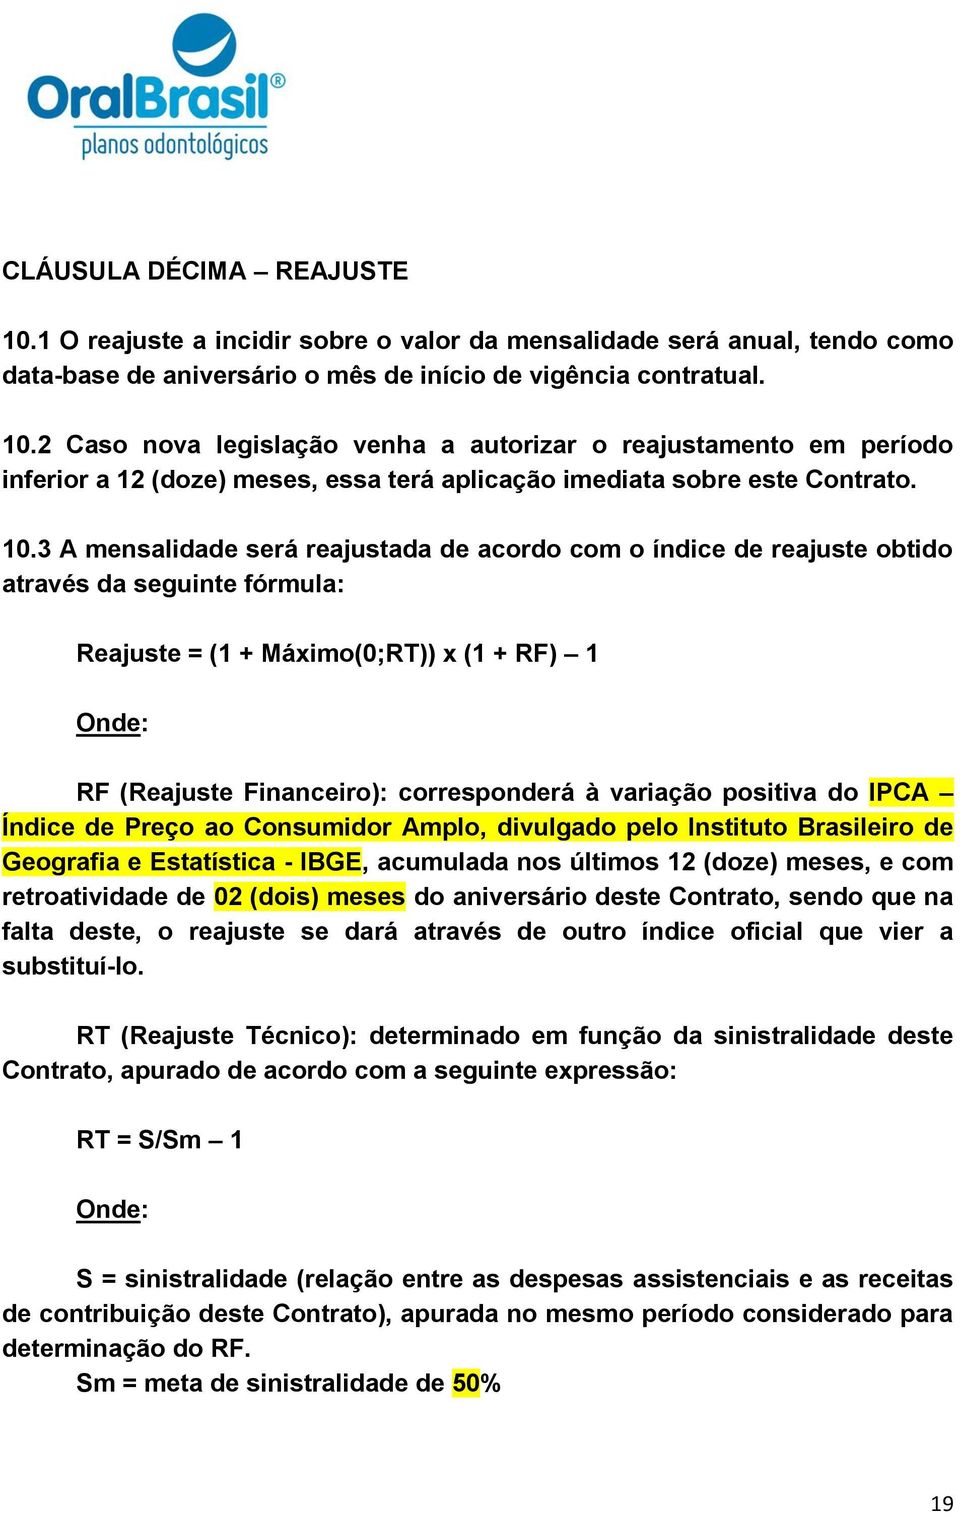 variação positiva do IPCA Índice de Preço ao Consumidor Amplo, divulgado pelo Instituto Brasileiro de Geografia e Estatística - IBGE, acumulada nos últimos 12 (doze) meses, e com retroatividade de 02